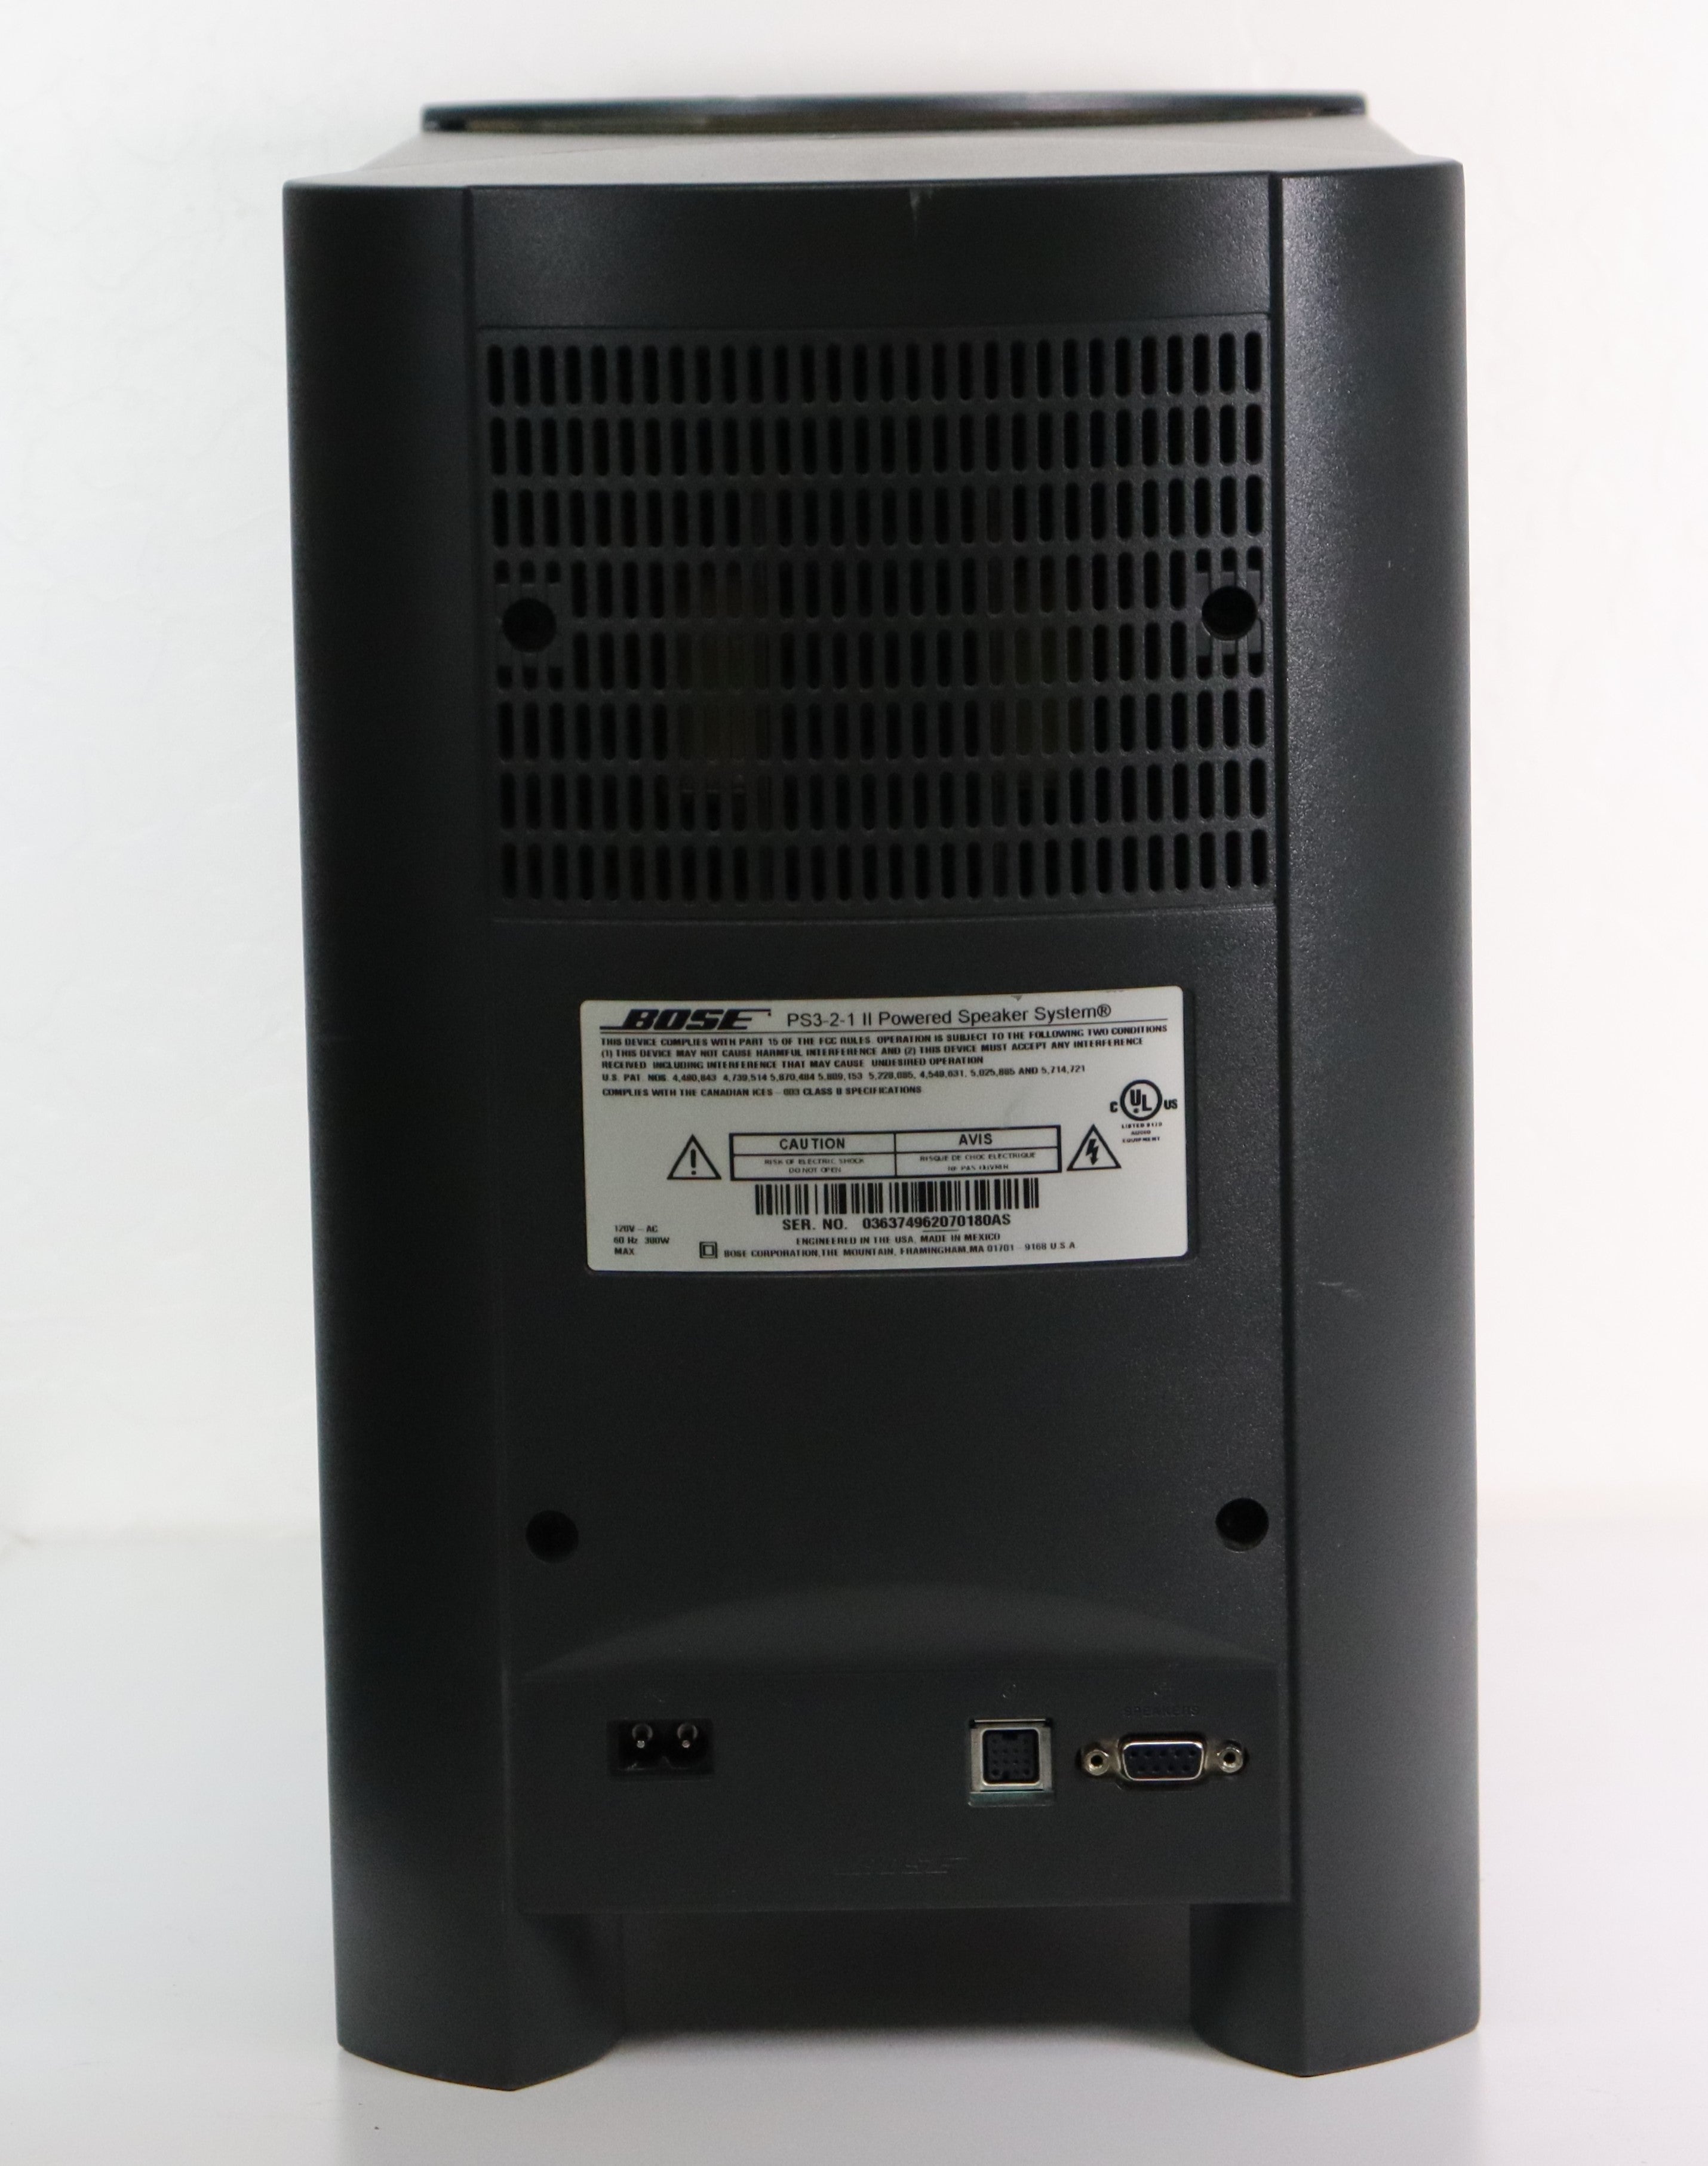 クリアランス BOSE PS3-2-1 II Powered Speaker System - オーディオ機器